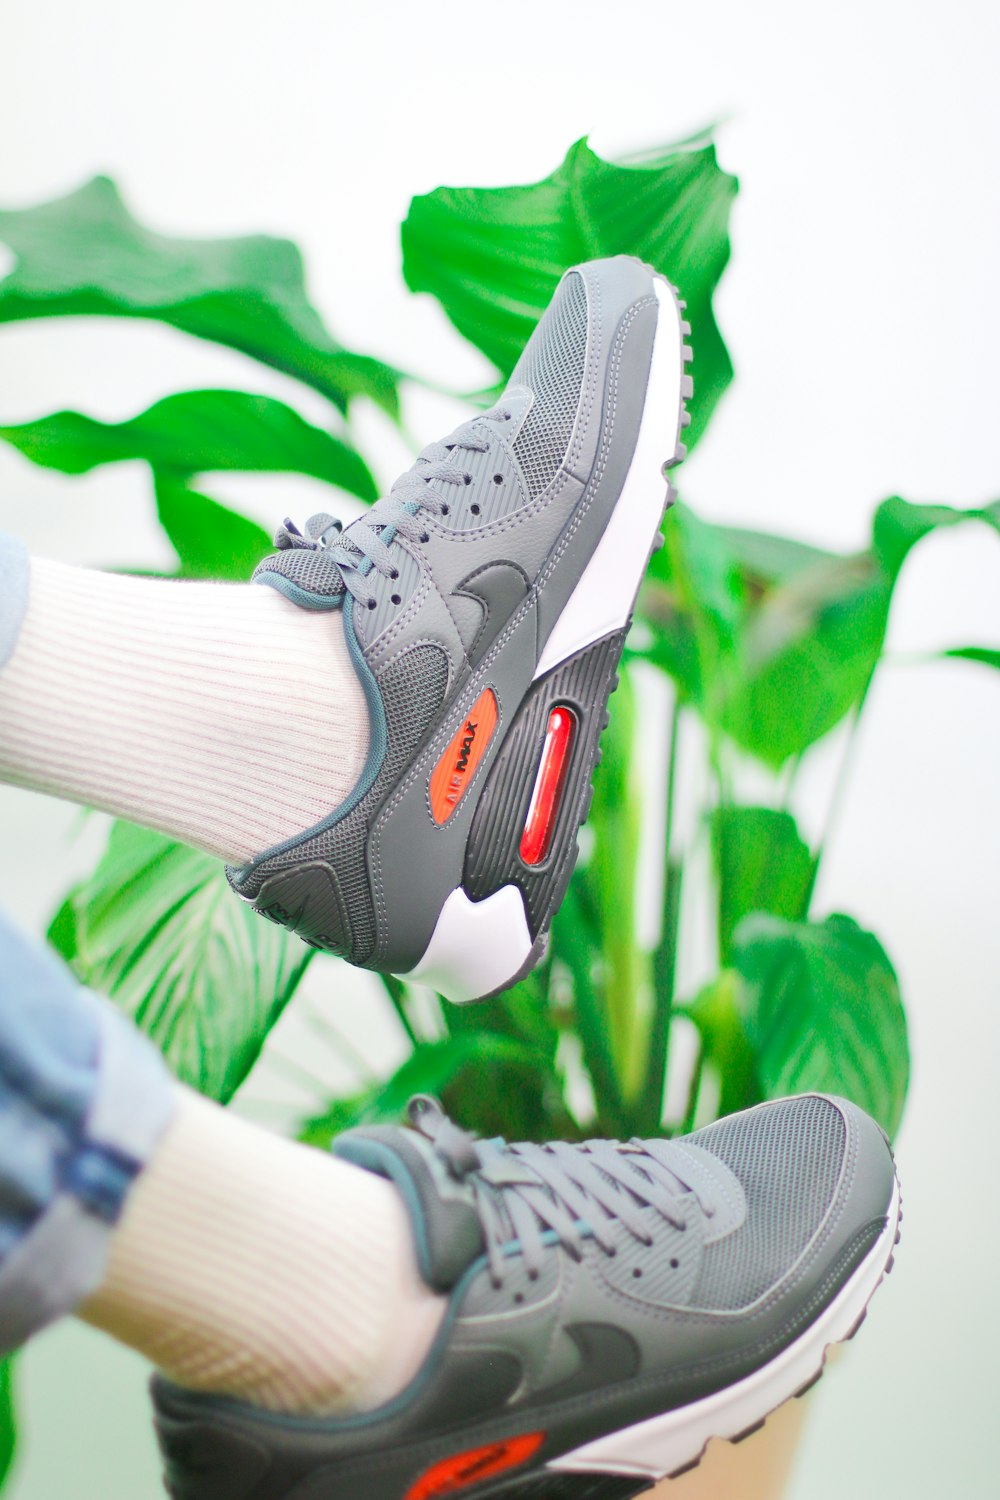 Persona con zapatos deportivos Nike grises y blancos